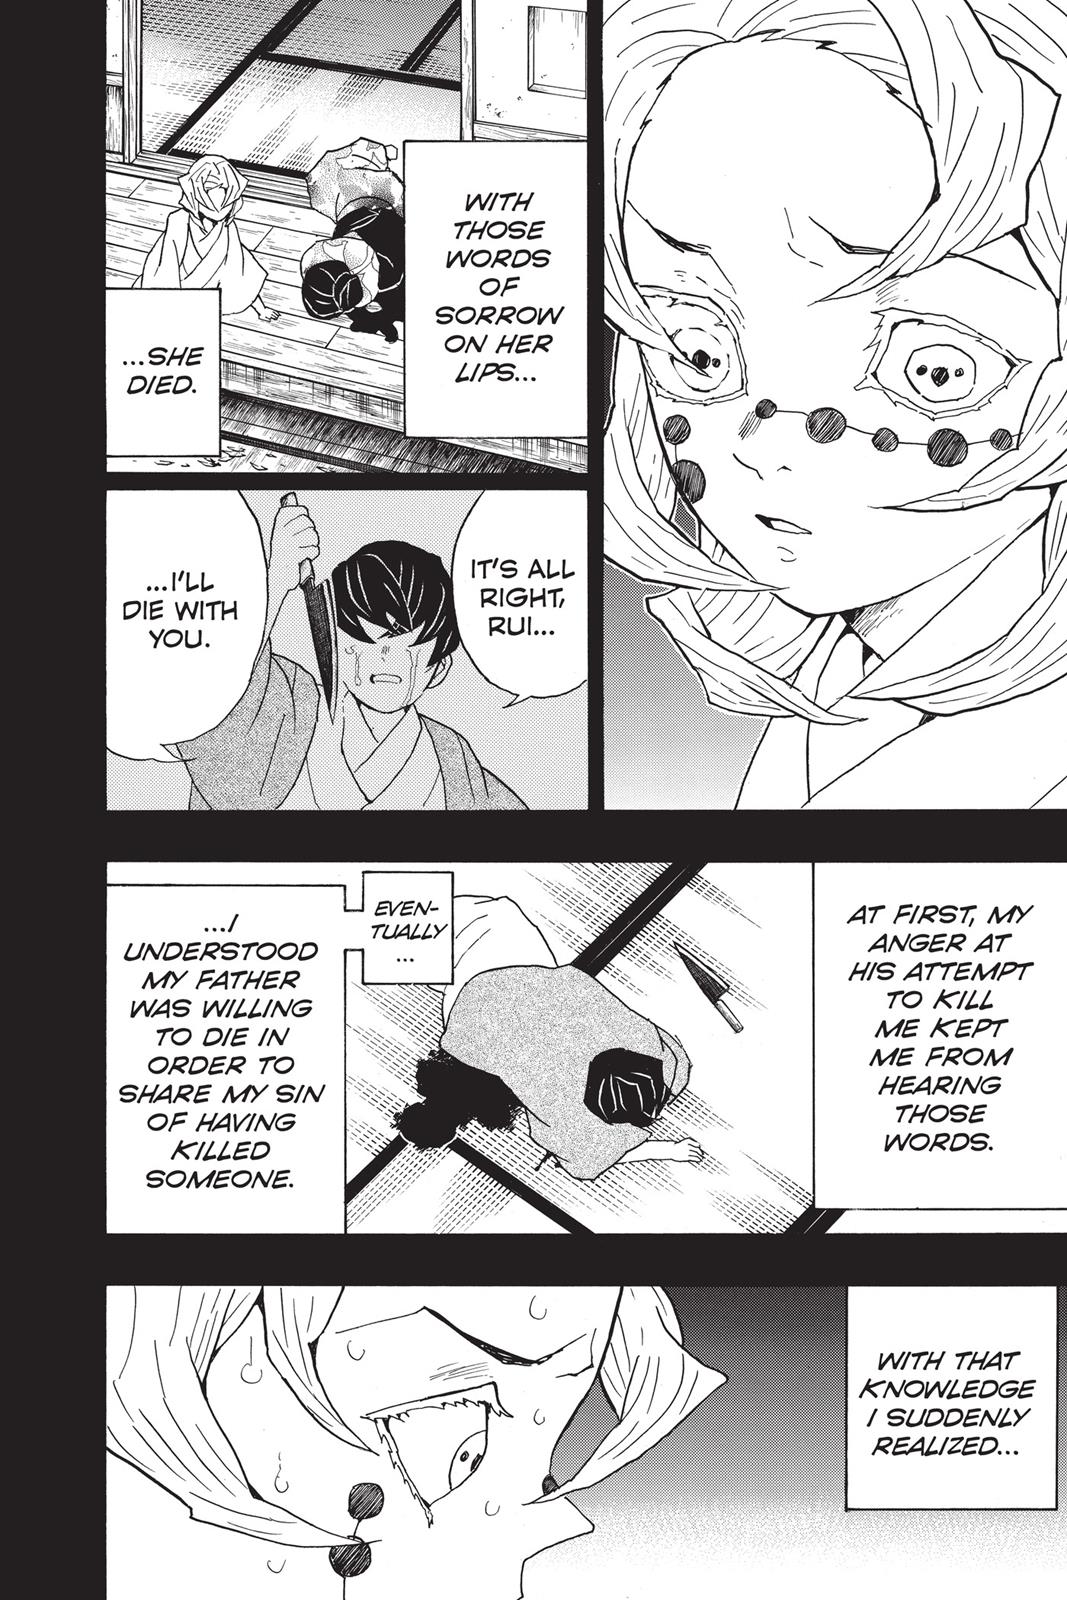 Demon Slayer Manga Manga Chapter - 43 - image 6